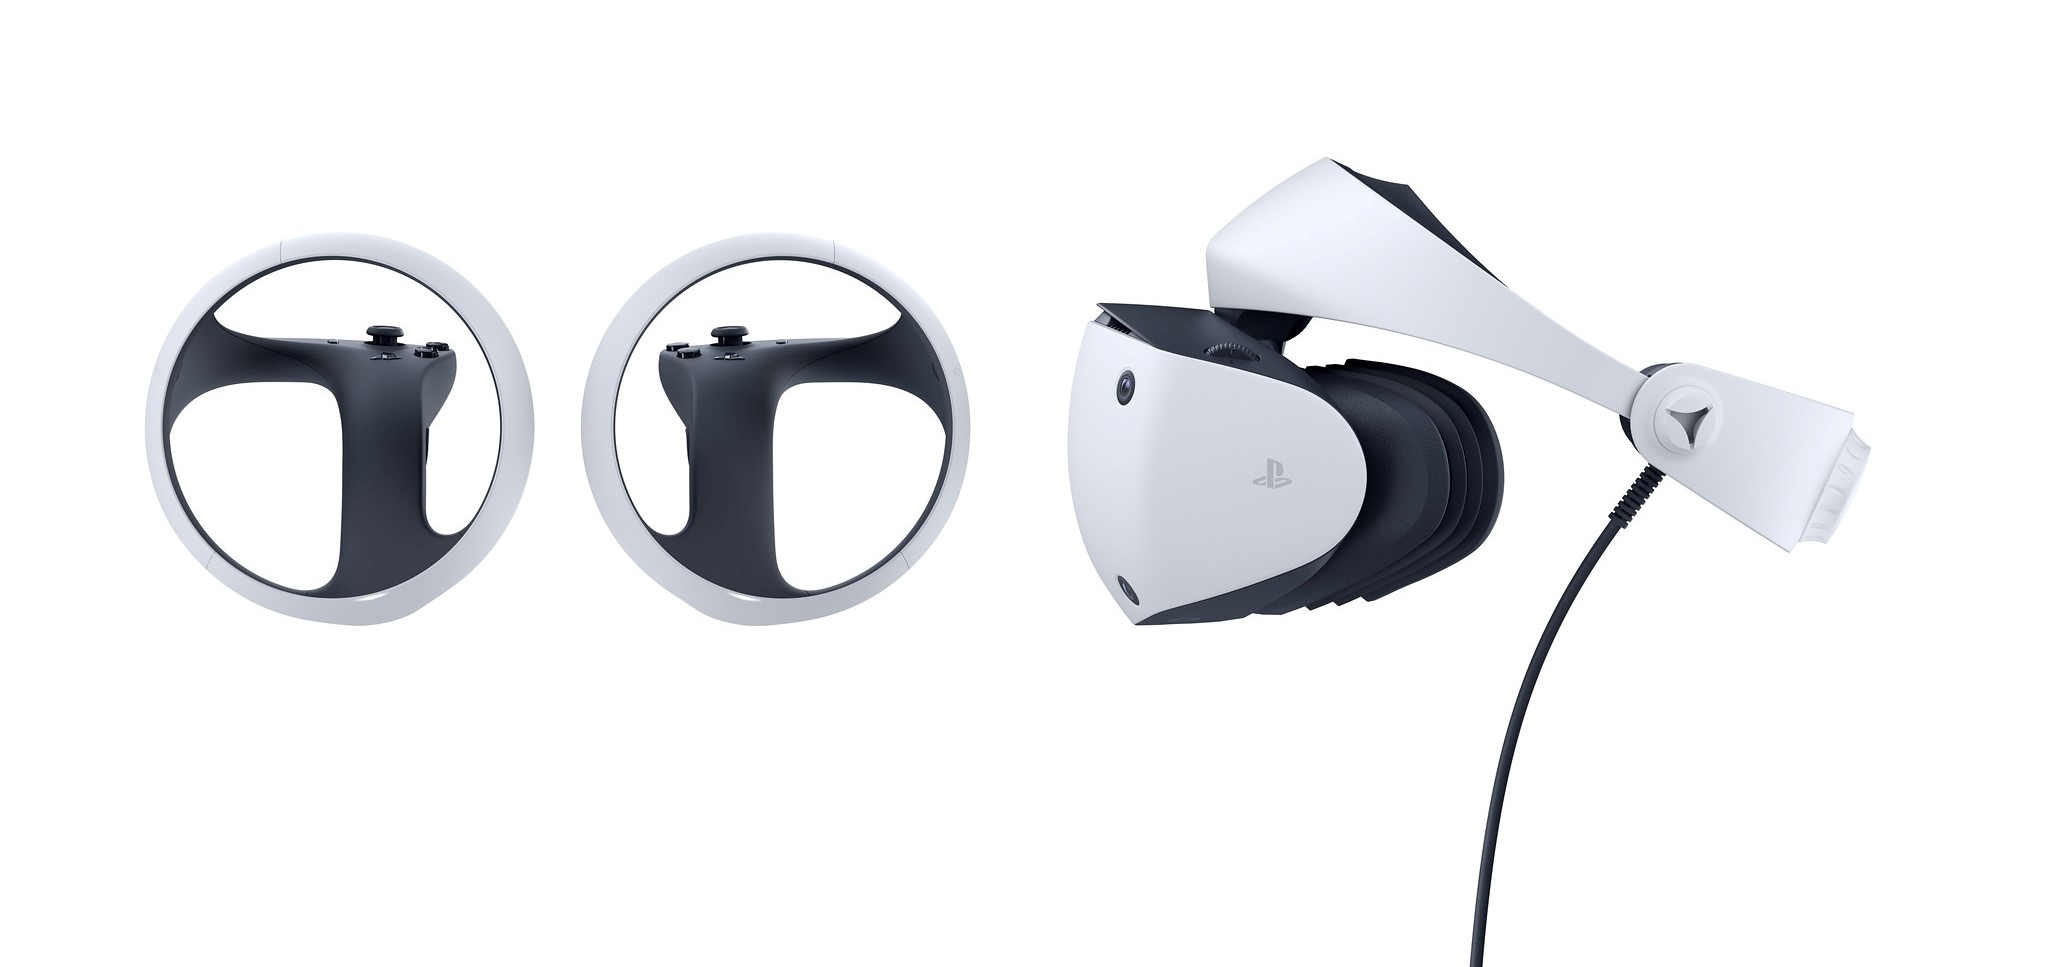 Sony PlayStation VR2: İlk bakış, özellikleri ve daha fazlası